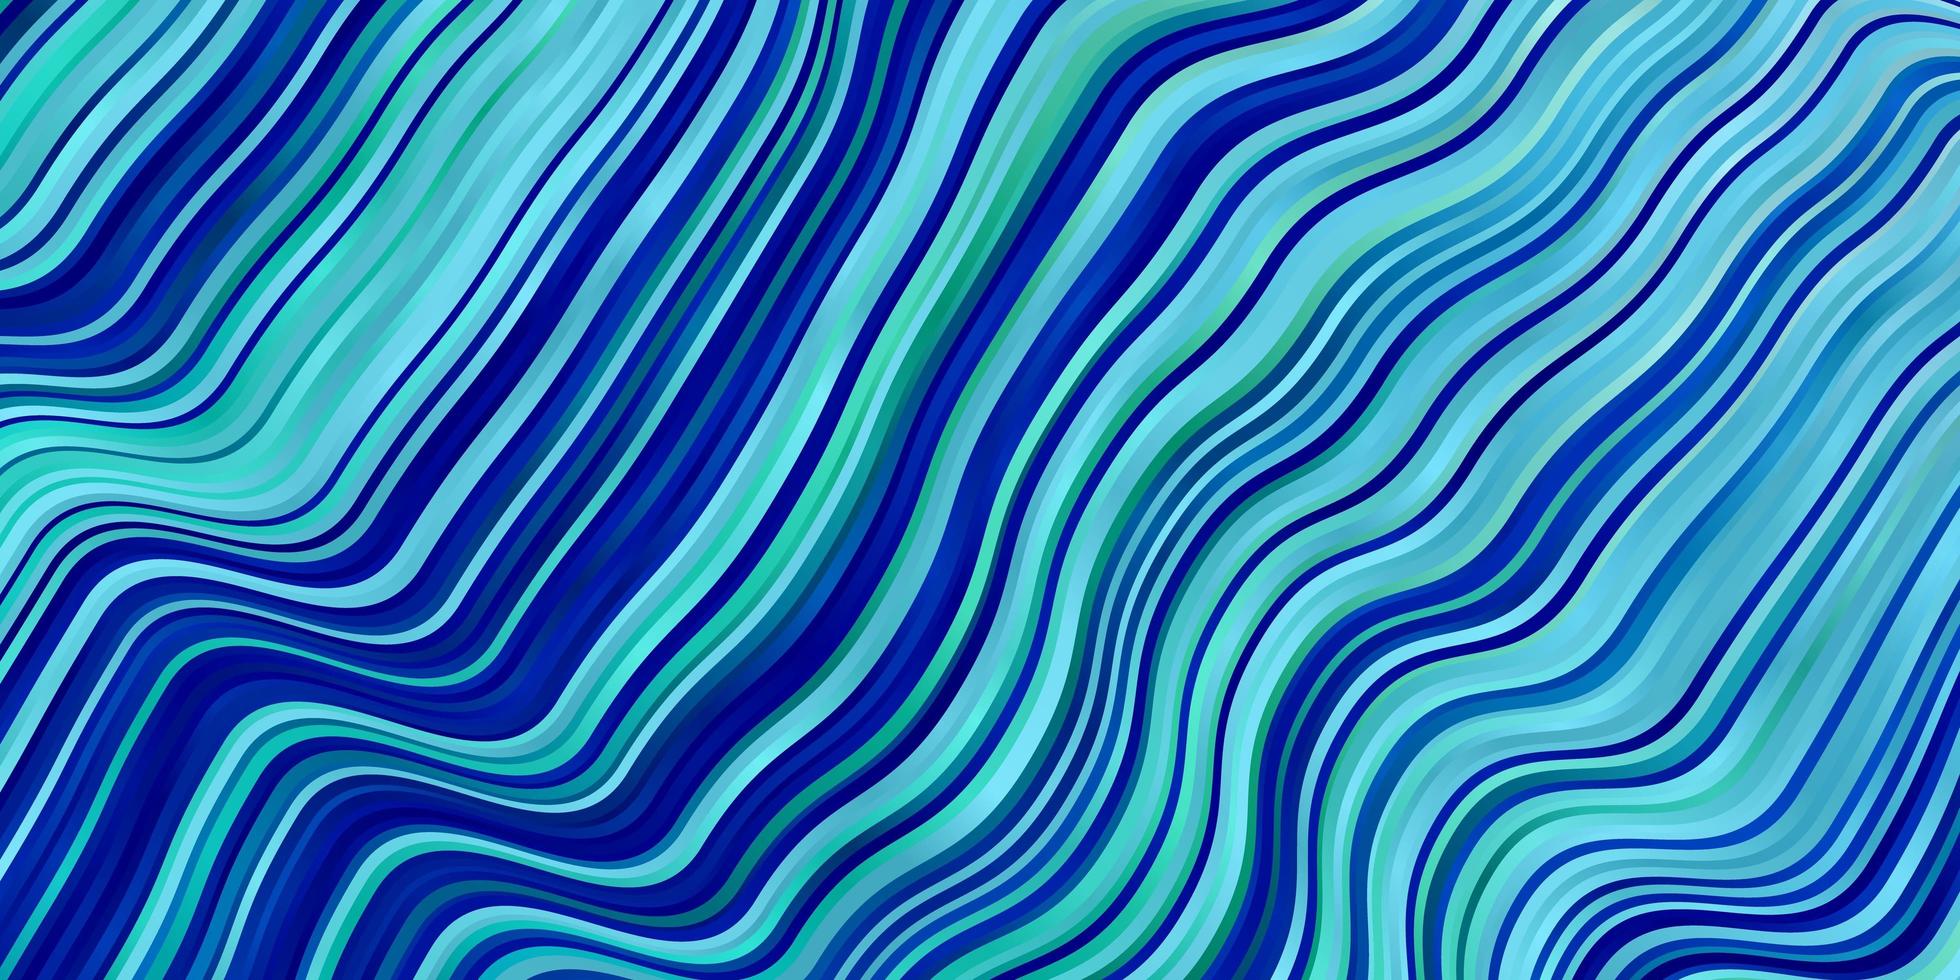 layout de vetor azul e verde claro com linhas irônicas.